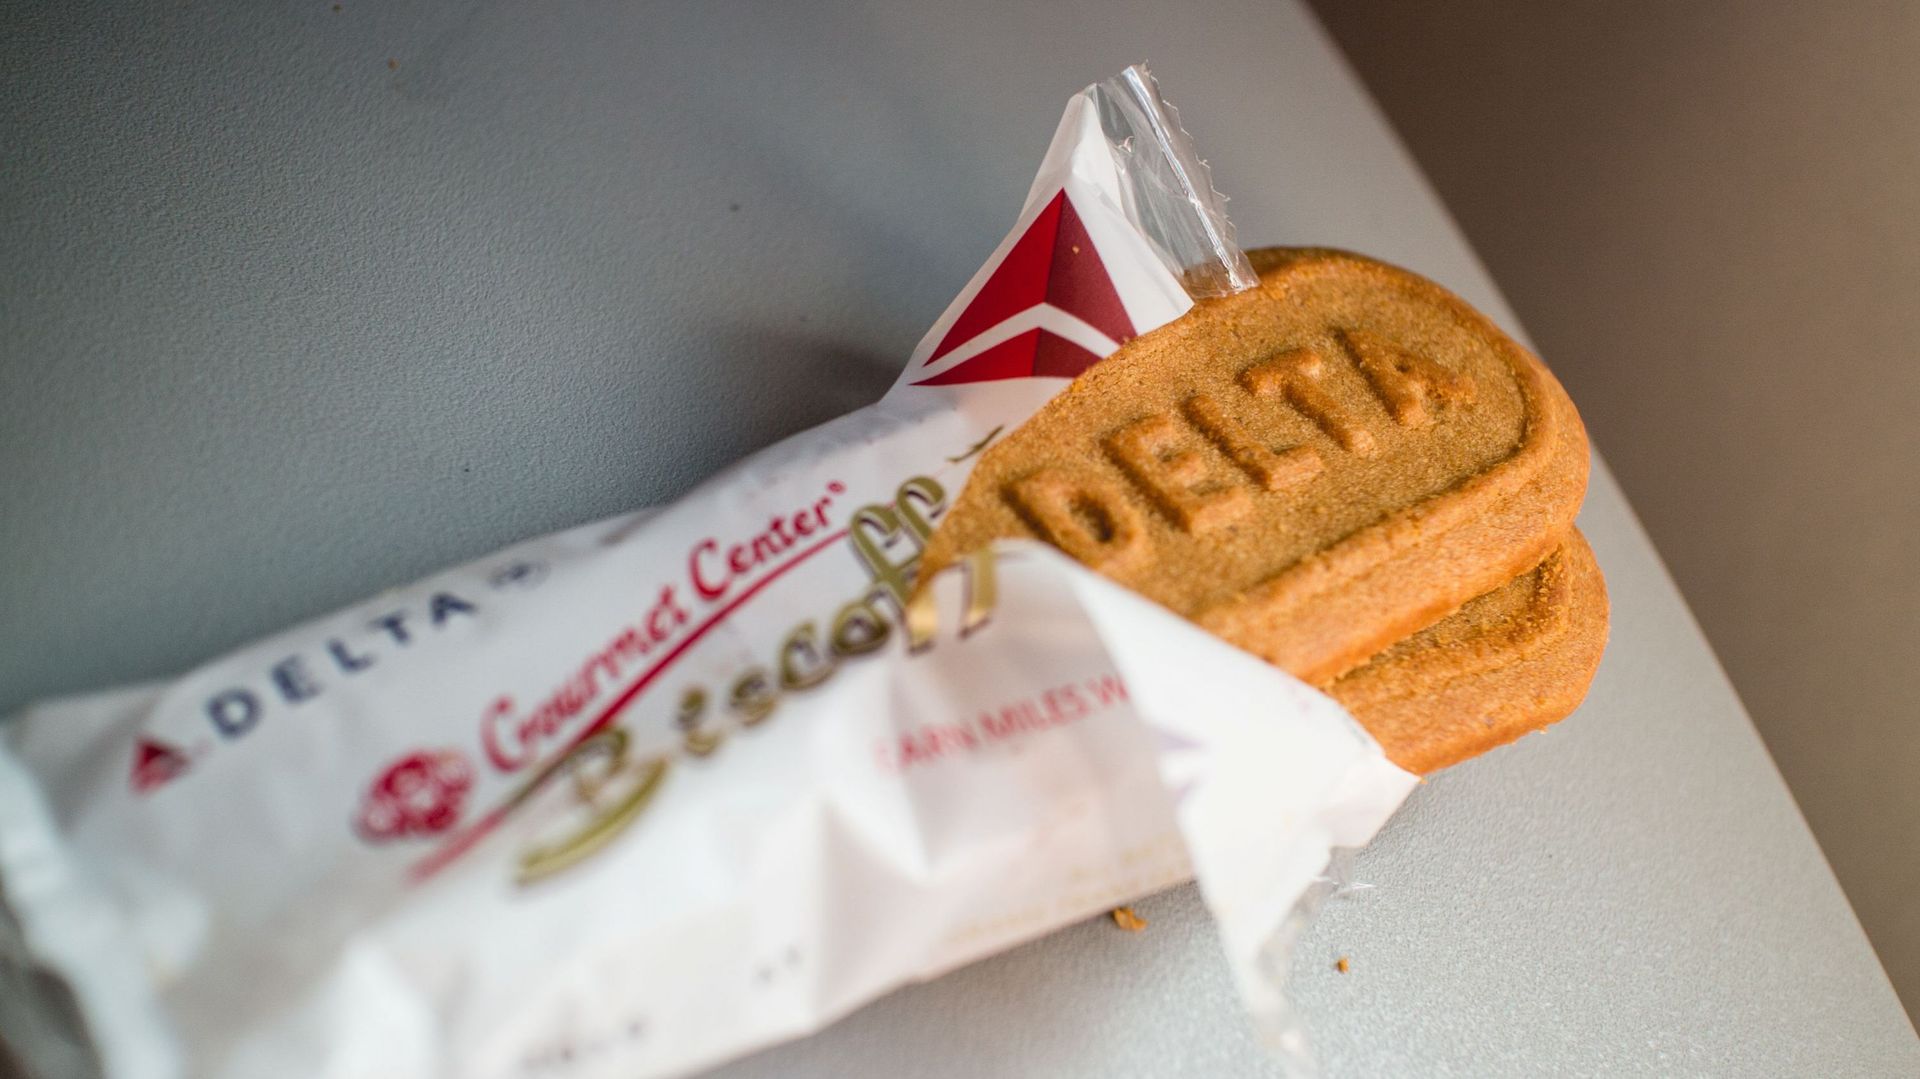 Des biscuits spéculoos Biscoff sur un vol Delta Airlines entre Seattle et San Francisco , samedi 18 avril 2015, à San Francisco, aux États-Unis.